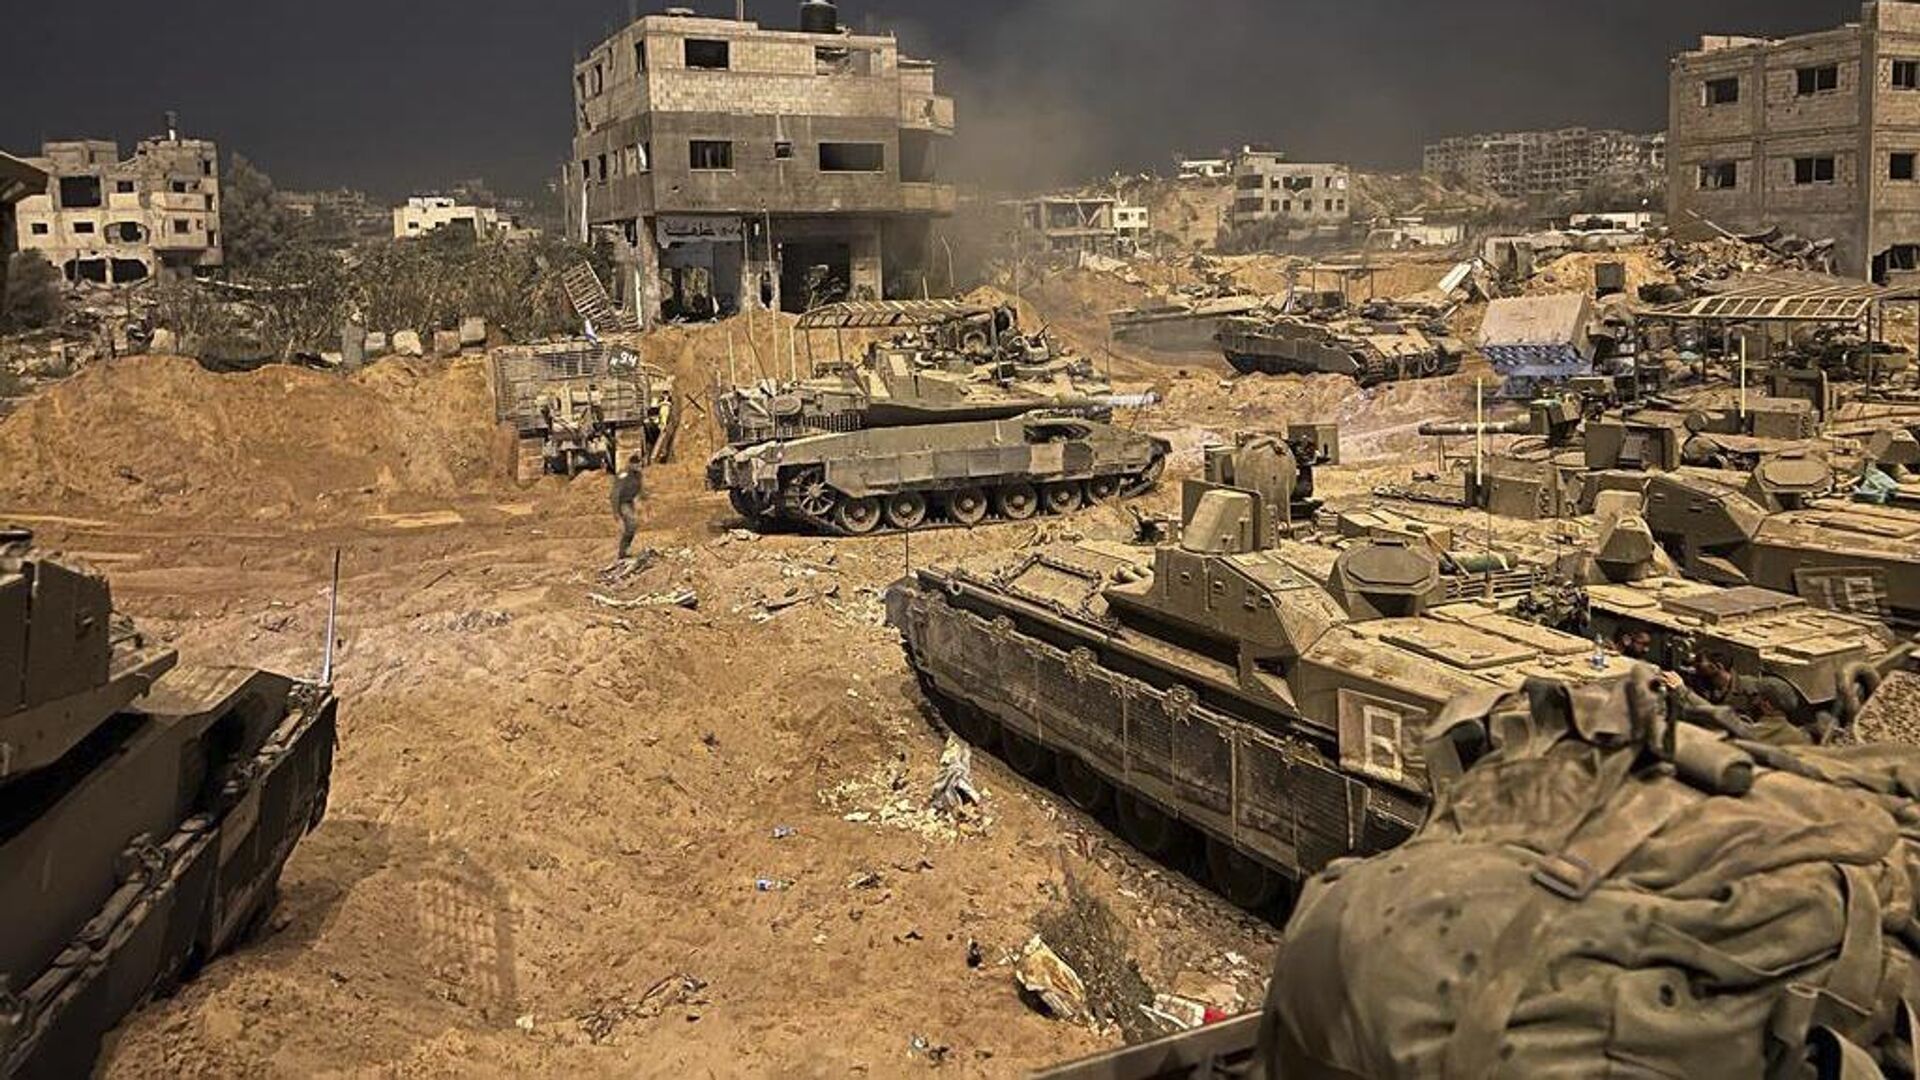 После эскалации насилия в секторе Газа, Израиль продолжает атаковать палестинцев на Западном берегу реки Иордан и в Иерусалиме. Об этом заявил пресс-секретарь президента Палестины Набиль Абу Рудейна в четверг, передает информационное агентство WAFA.
